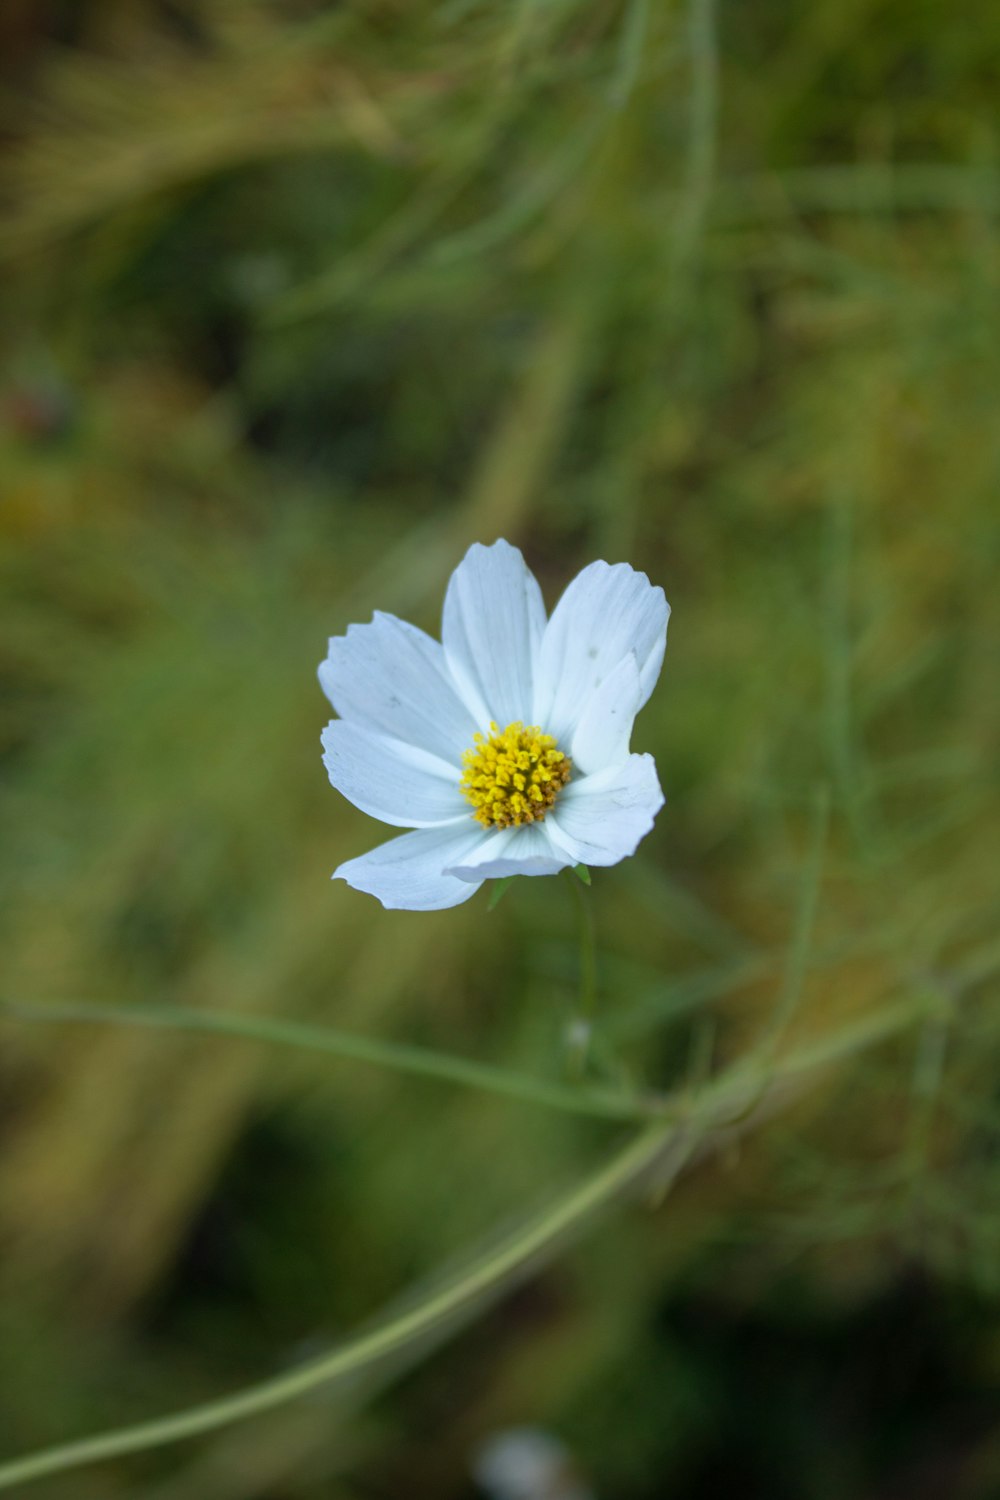 un singolo fiore bianco con un centro giallo